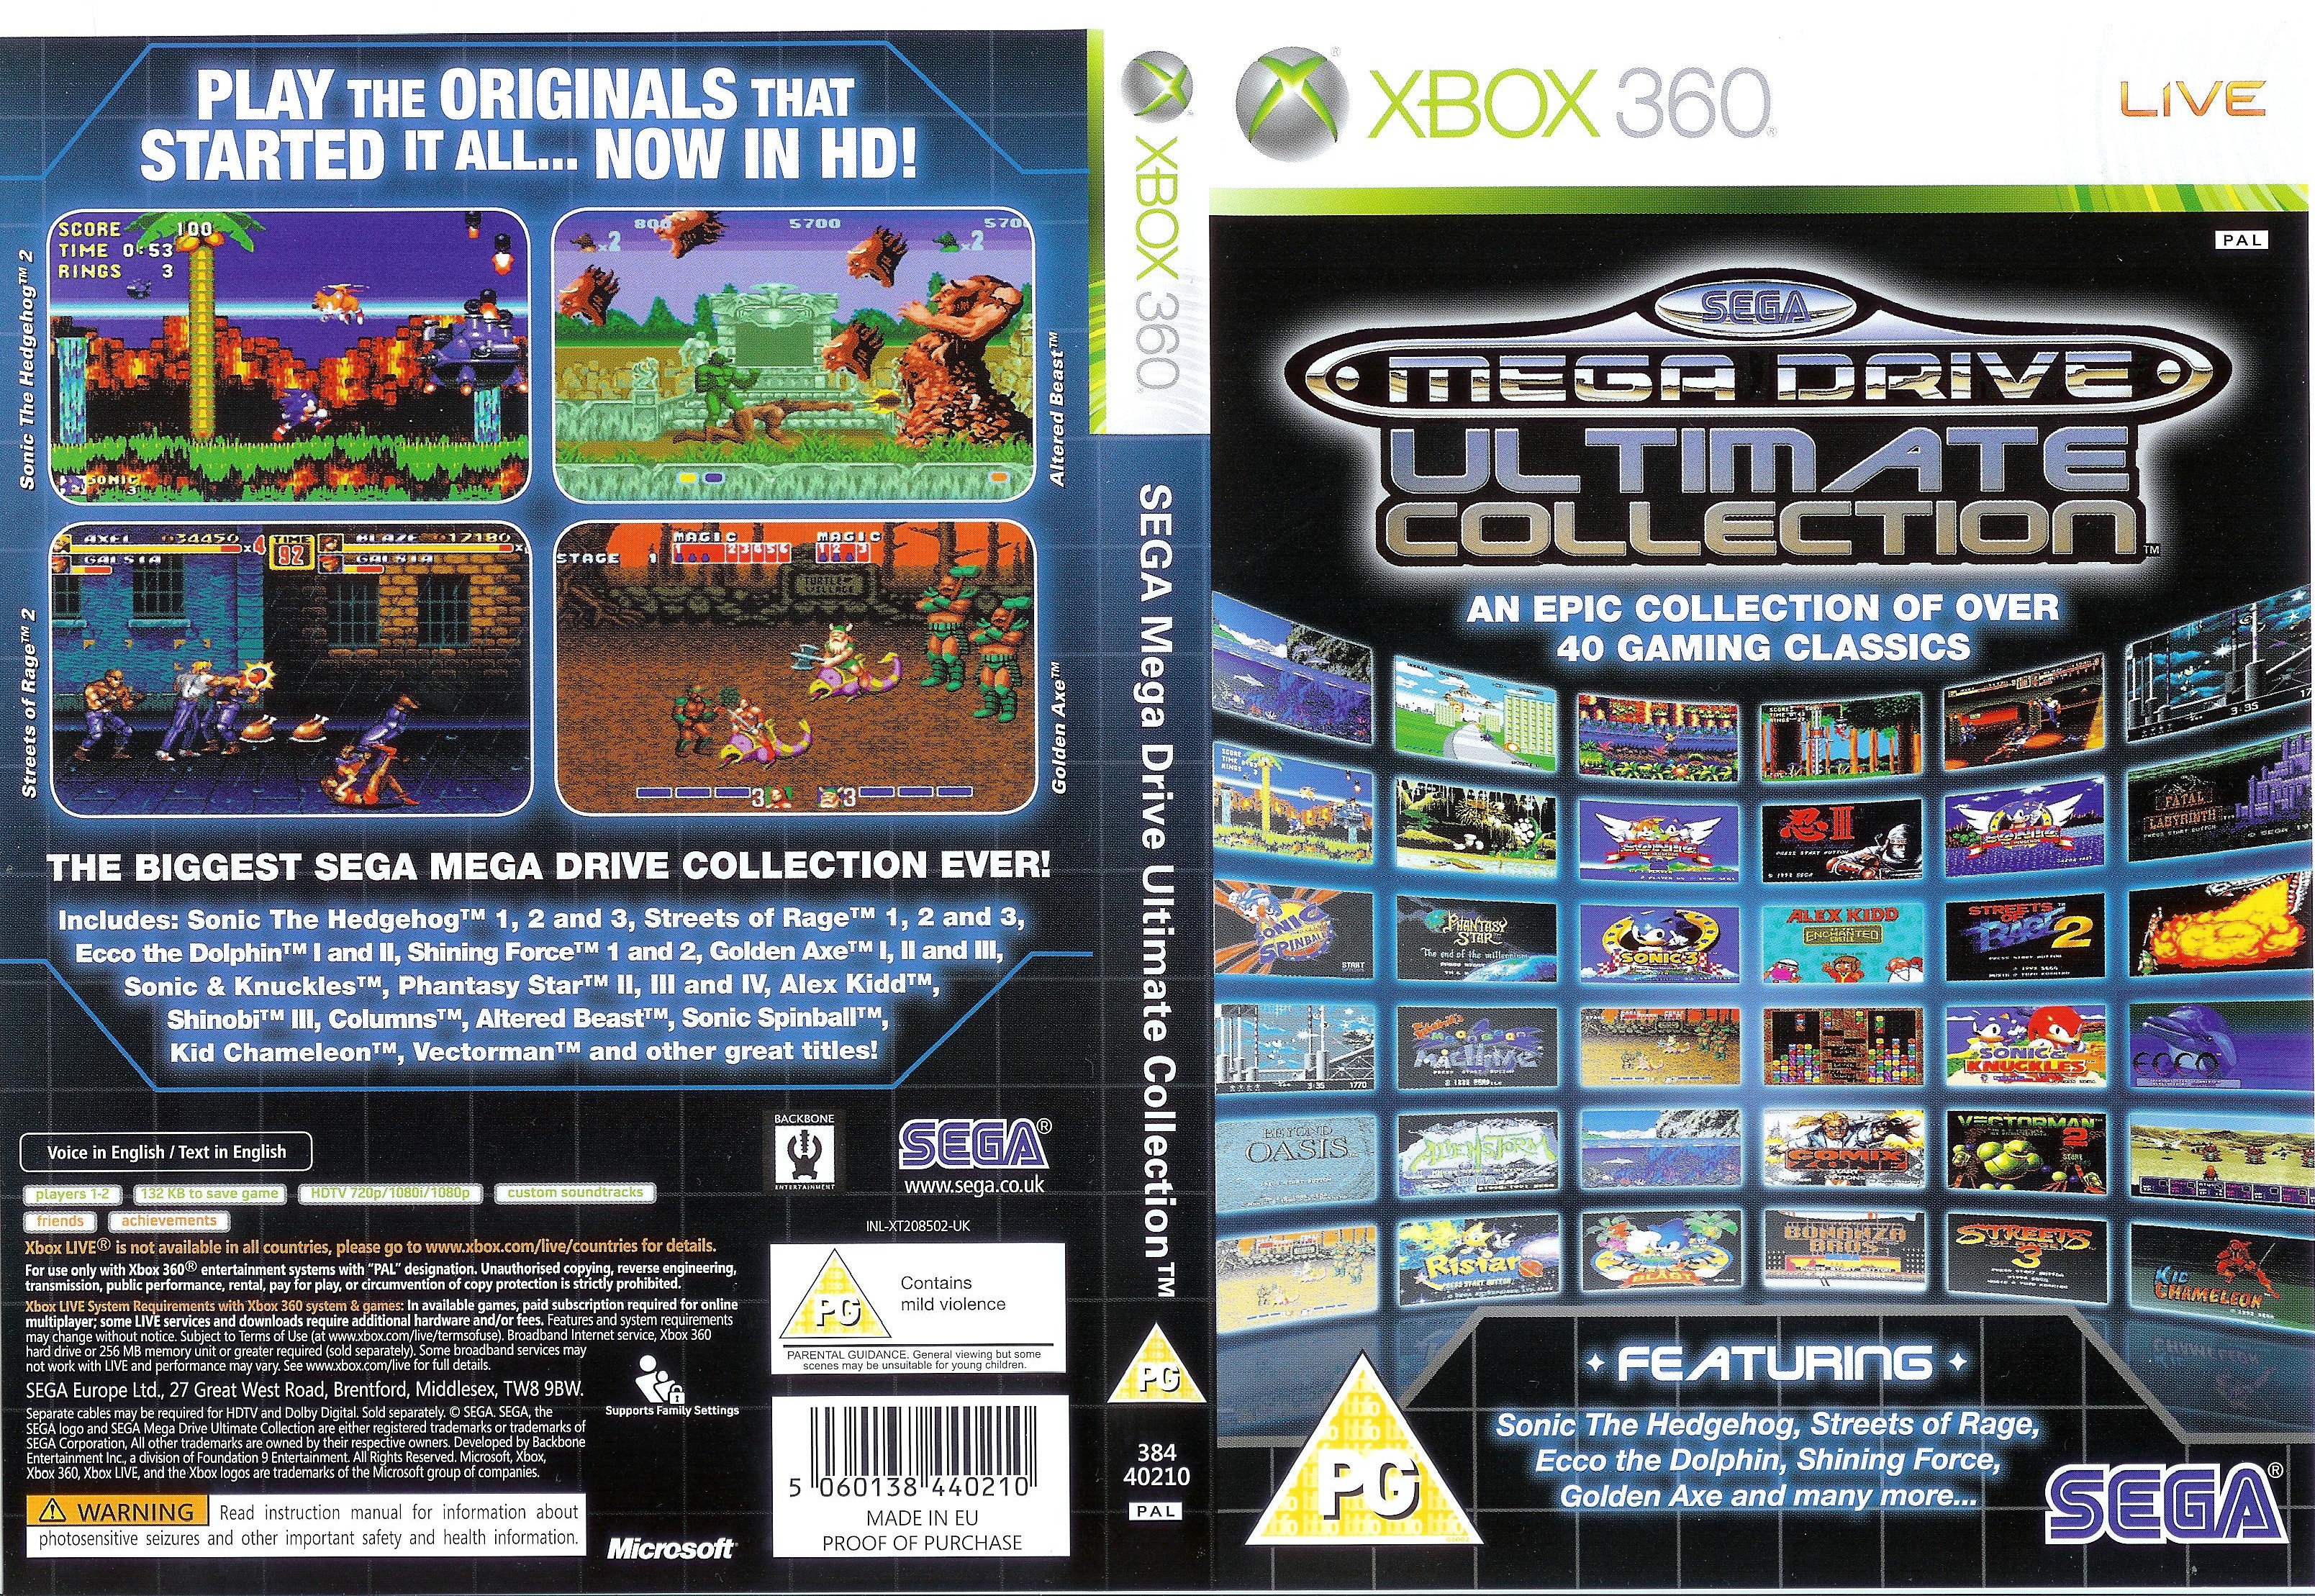 Classic games collection. Xbox 360 Sega. Xbox 360 Sega Mega Drive. Sega Genesis collection xbox360. Sega Mega Drive collection ps3 Cover.